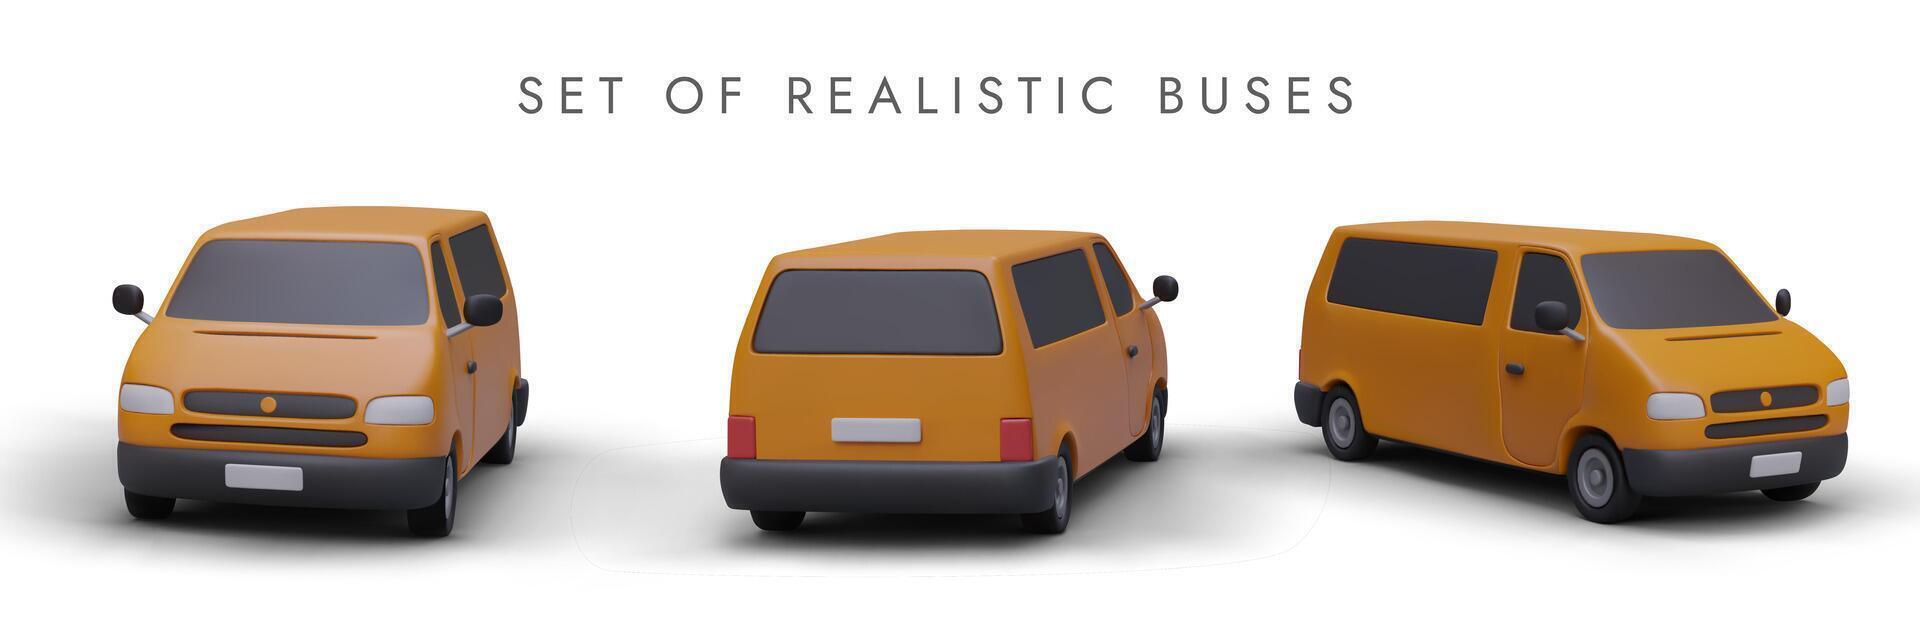 conjunto do realista 3d ônibus dentro diferente posições para transporte branding e publicidade vetor